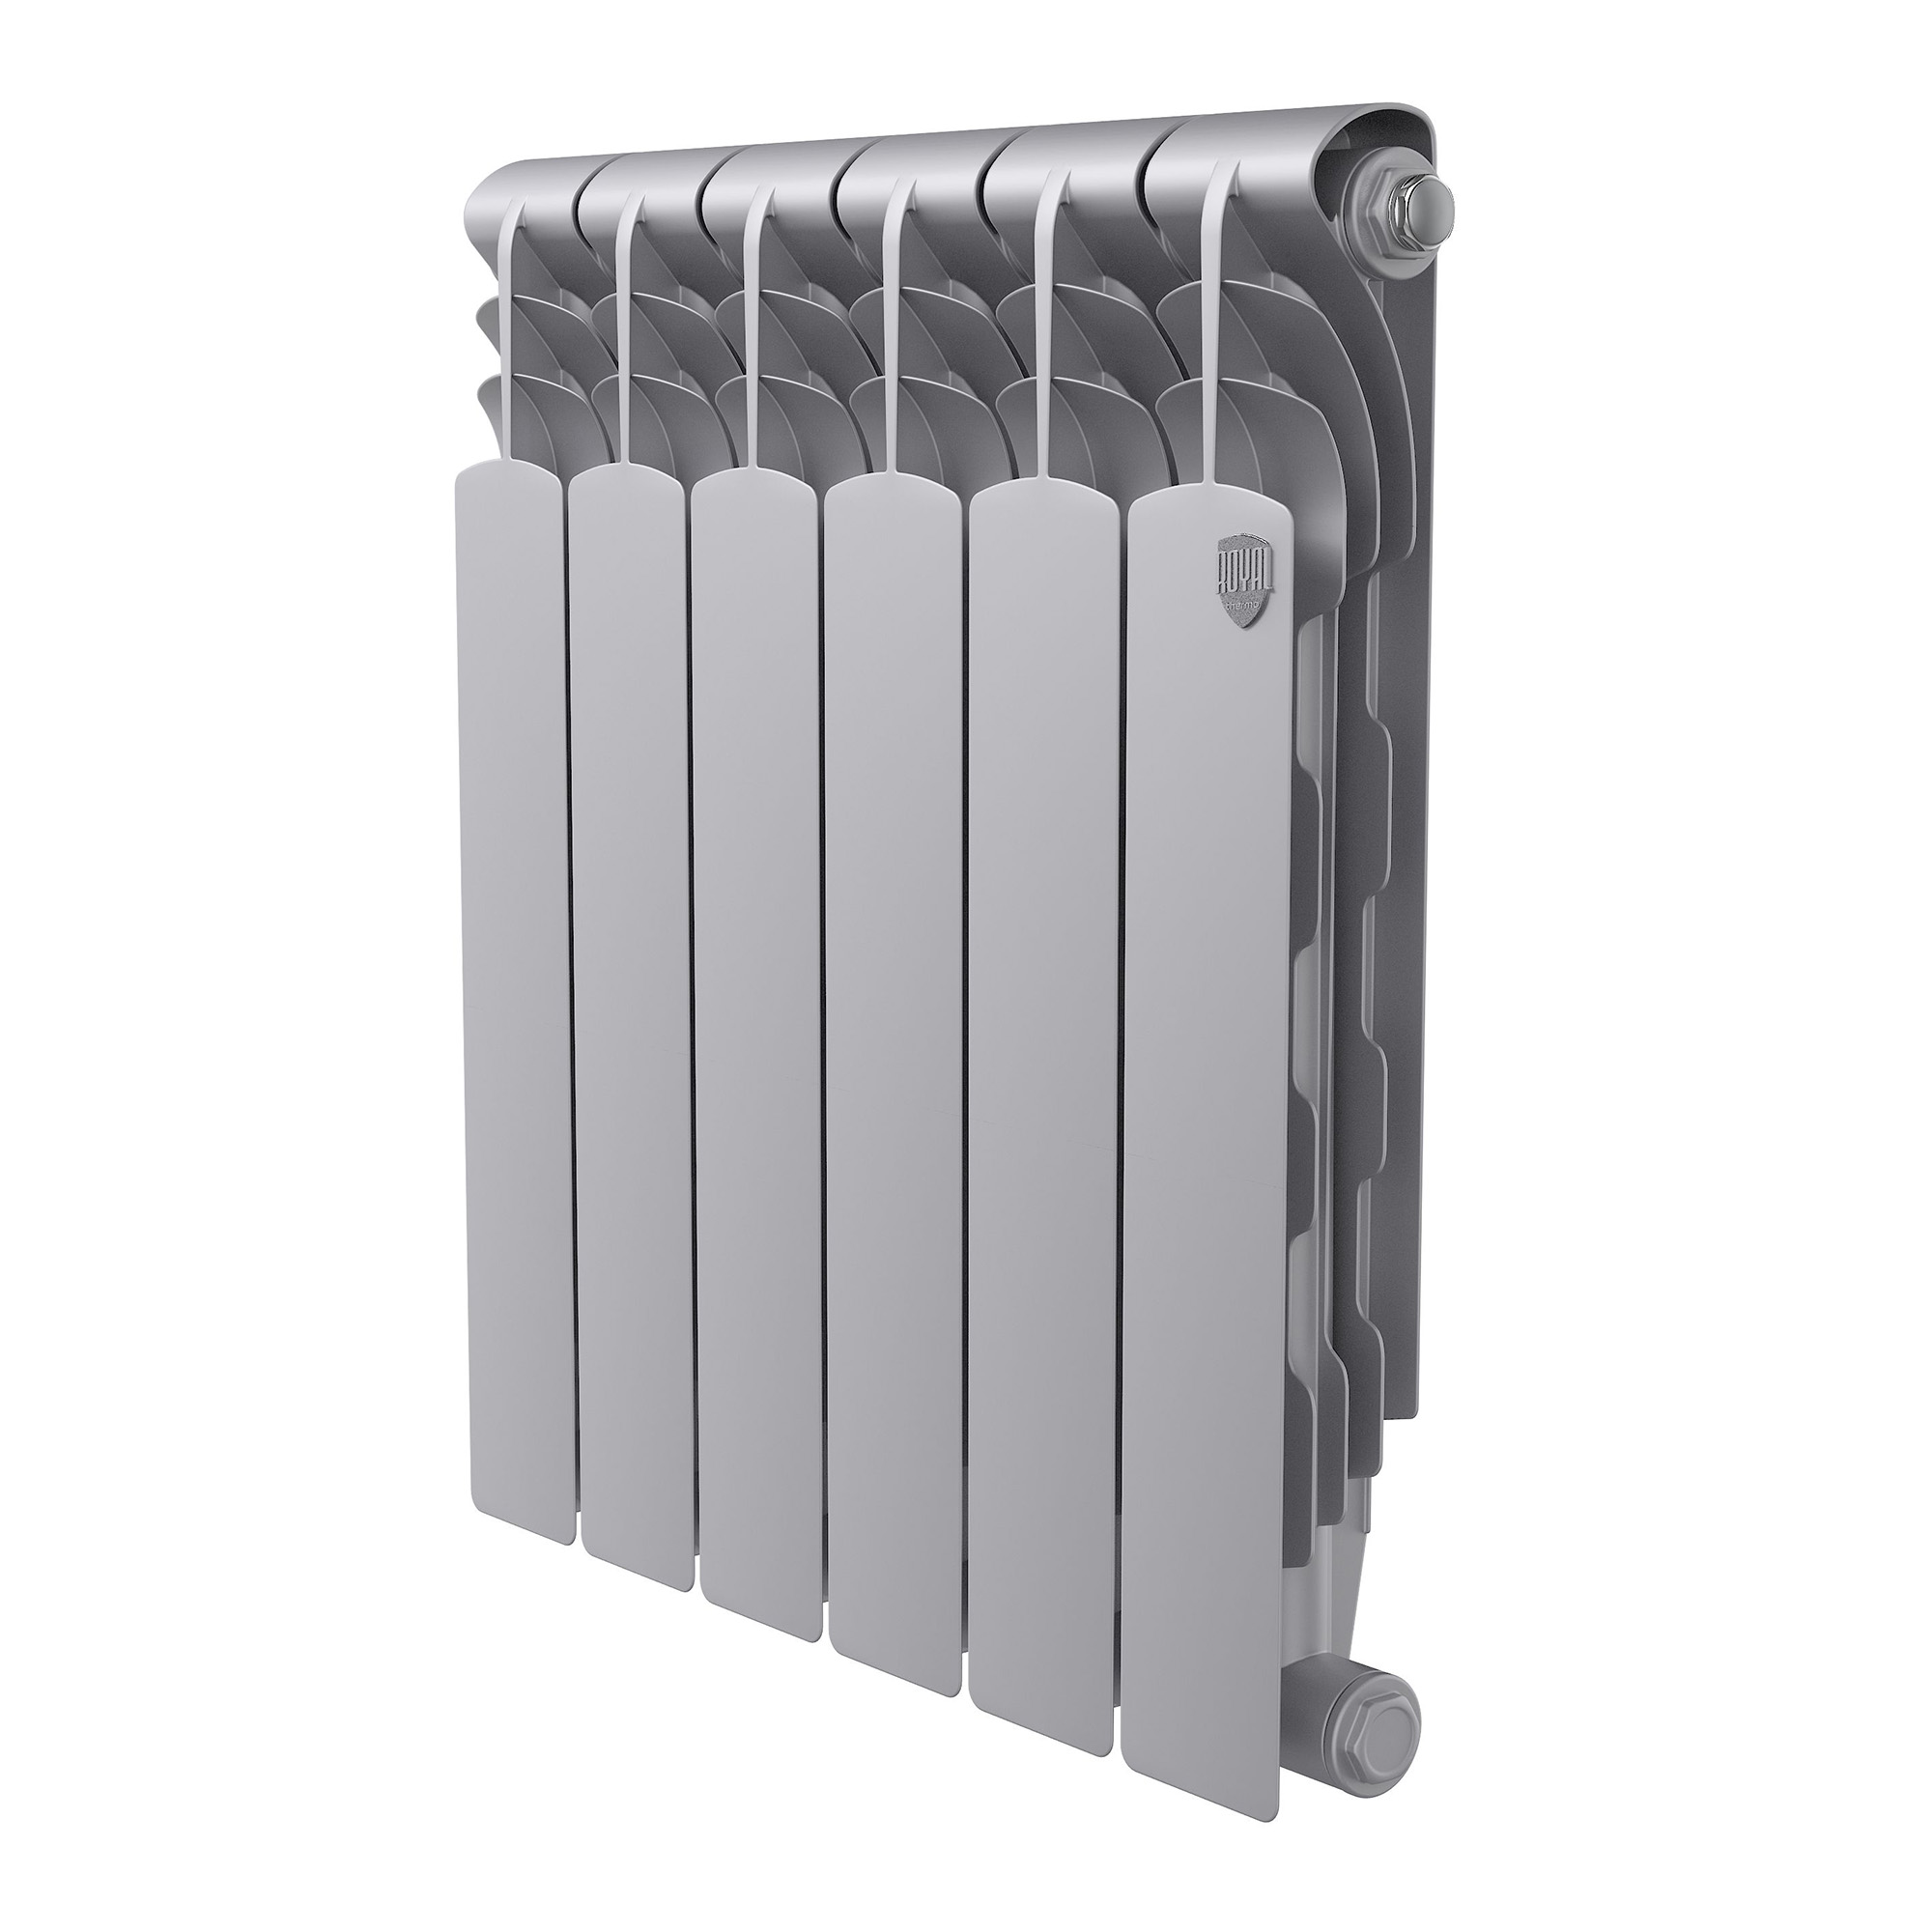 Радиатор биметаллический Royal Thermo Revolution Bimetall 500 2.0, 6 секций, боковое универсальное подключение, серебристо-серый (Silver Satin)